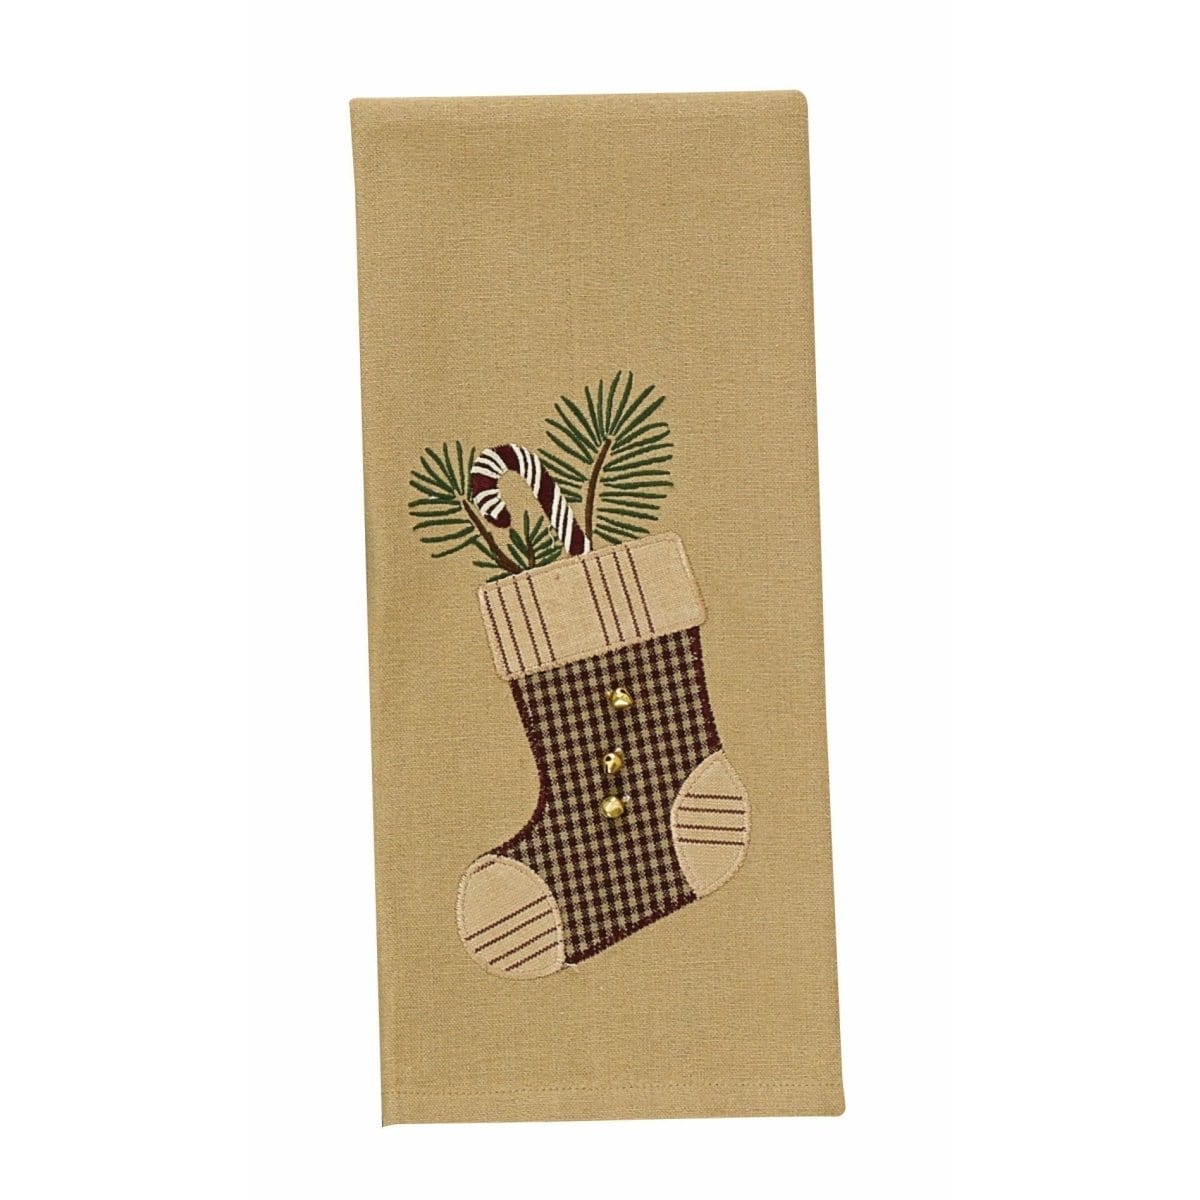 Stocking Decorative Towel-Park Designs-The Village Merchant